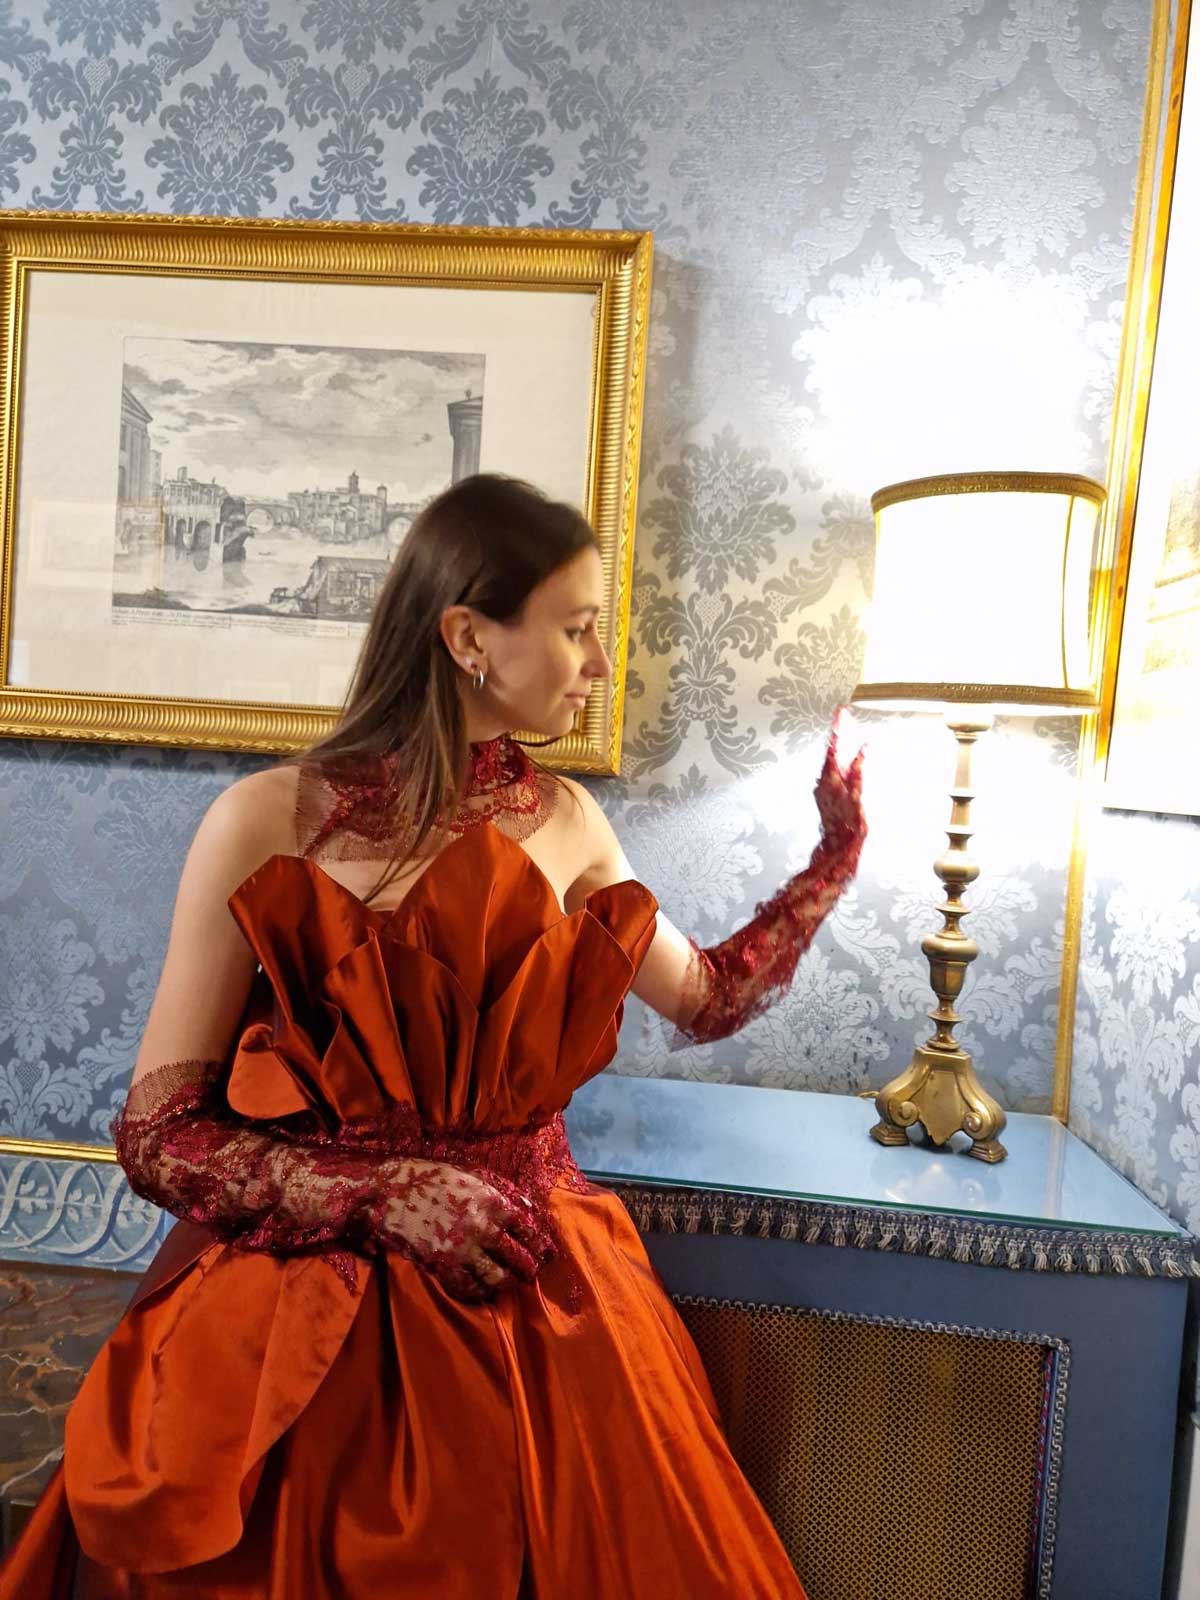 Mod’Art Roma - Il fascino dei colori - sfilata modelle nello storico Palazzo Ferrajoli - evento d’alta moda con gli eleganti abiti di Elins moda ragazza vestita in rosso bruno